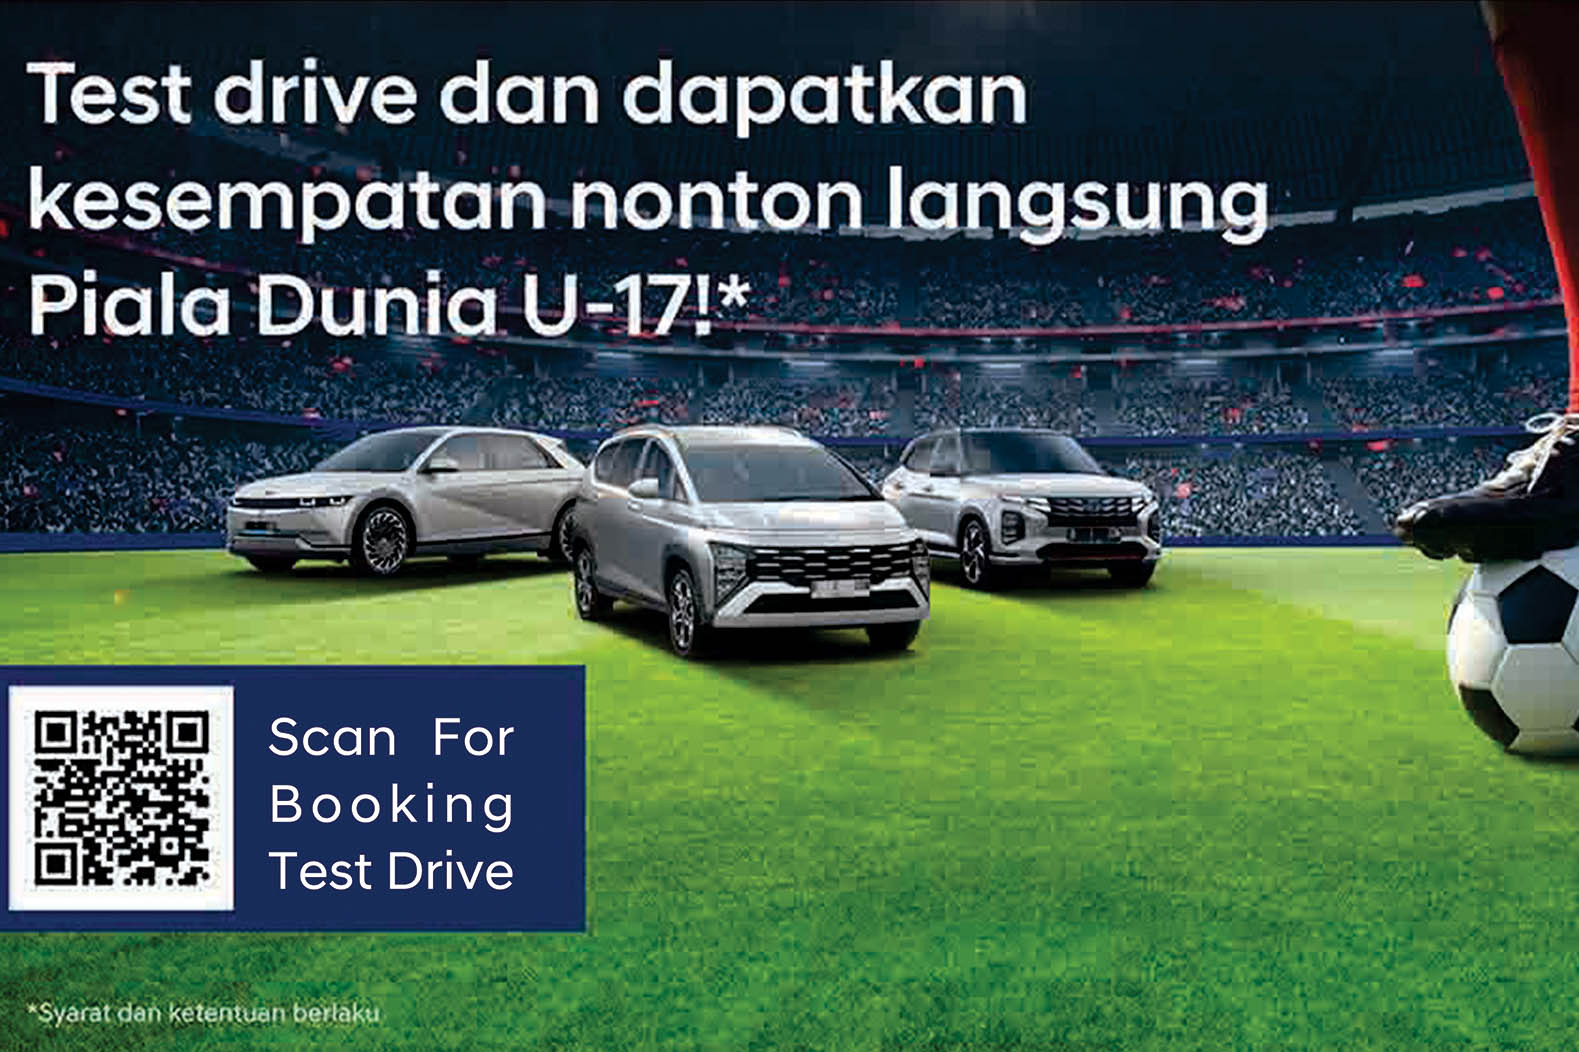 Test Drive Hyundai Berpeluang Gratis Nonton Piala Dunia U-17